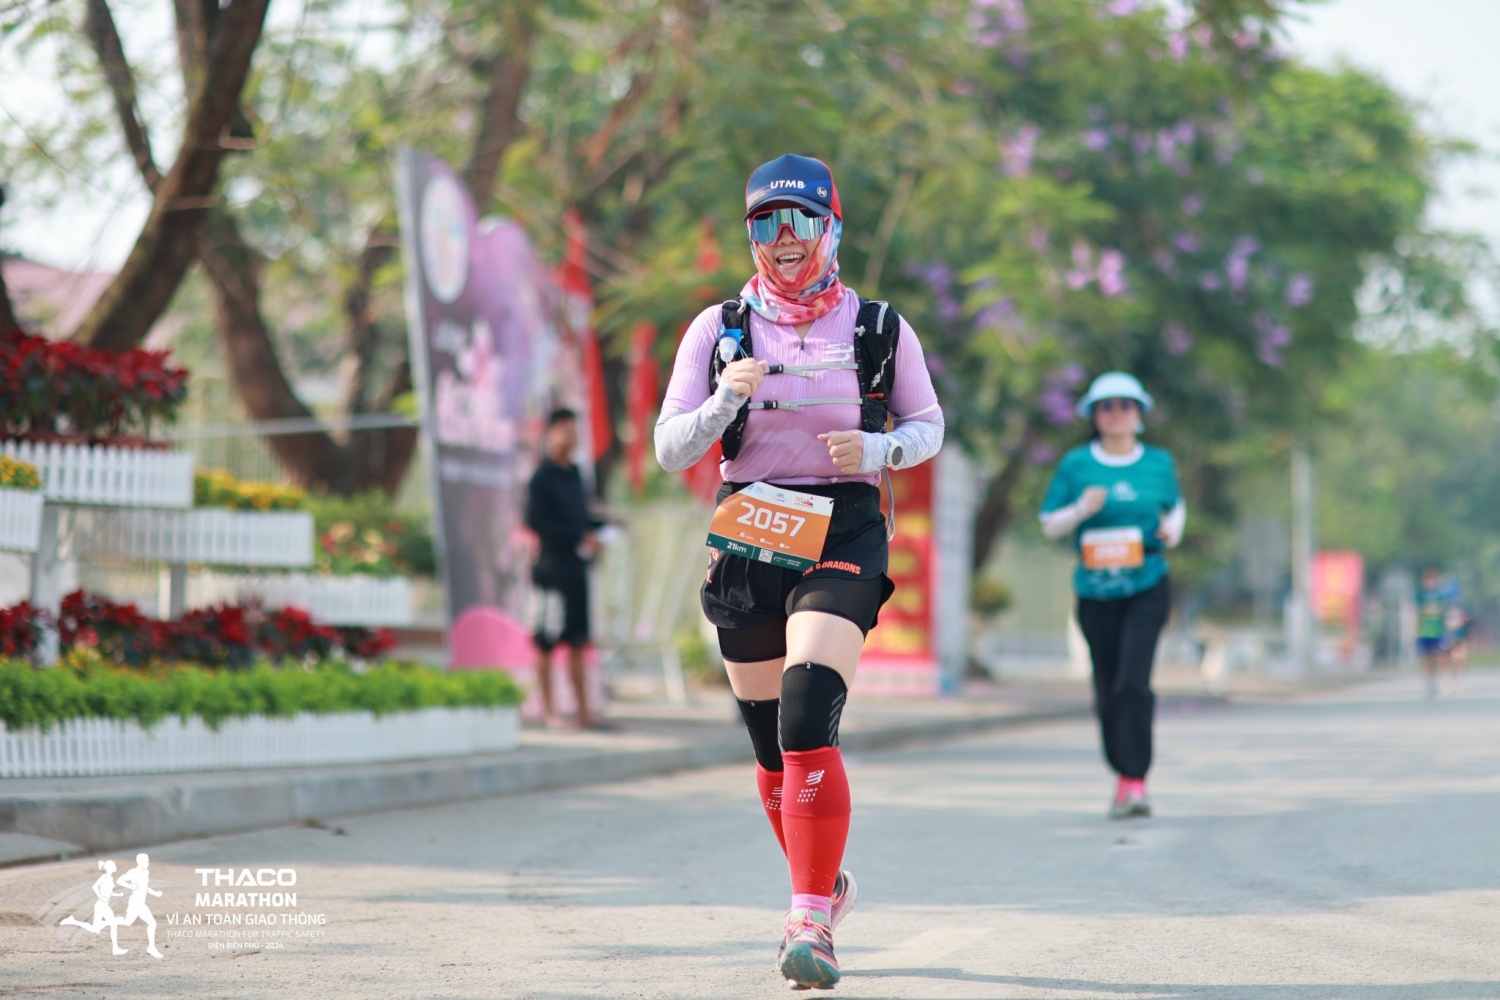 Petrovietnam đồng hành cùng giải chạy THACO Marathon vì ATGT - Điện Biên Phủ- Ảnh 6.